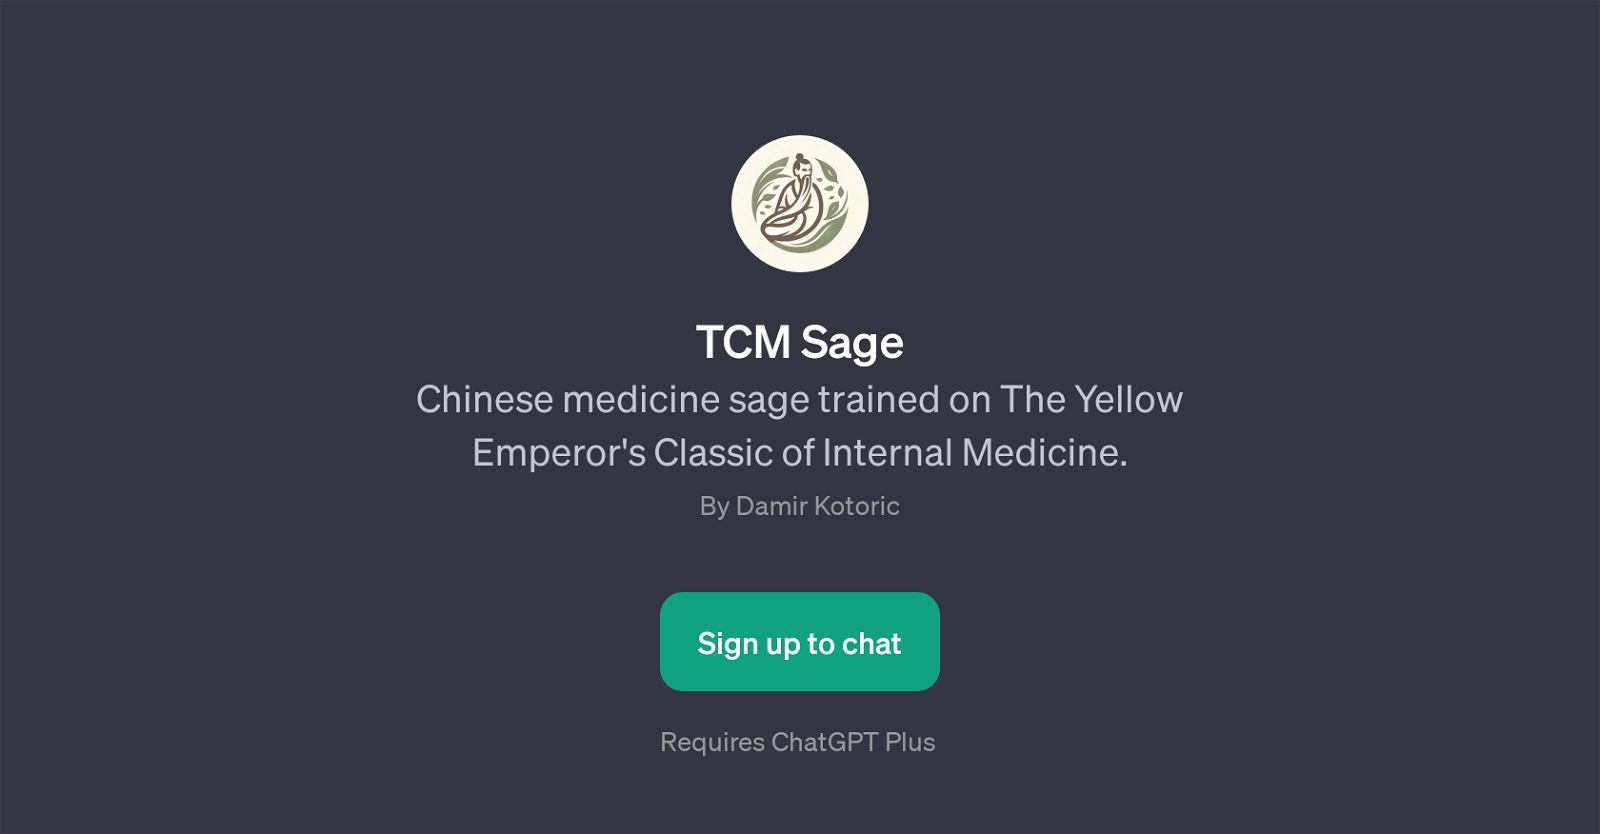 TCM Sage website